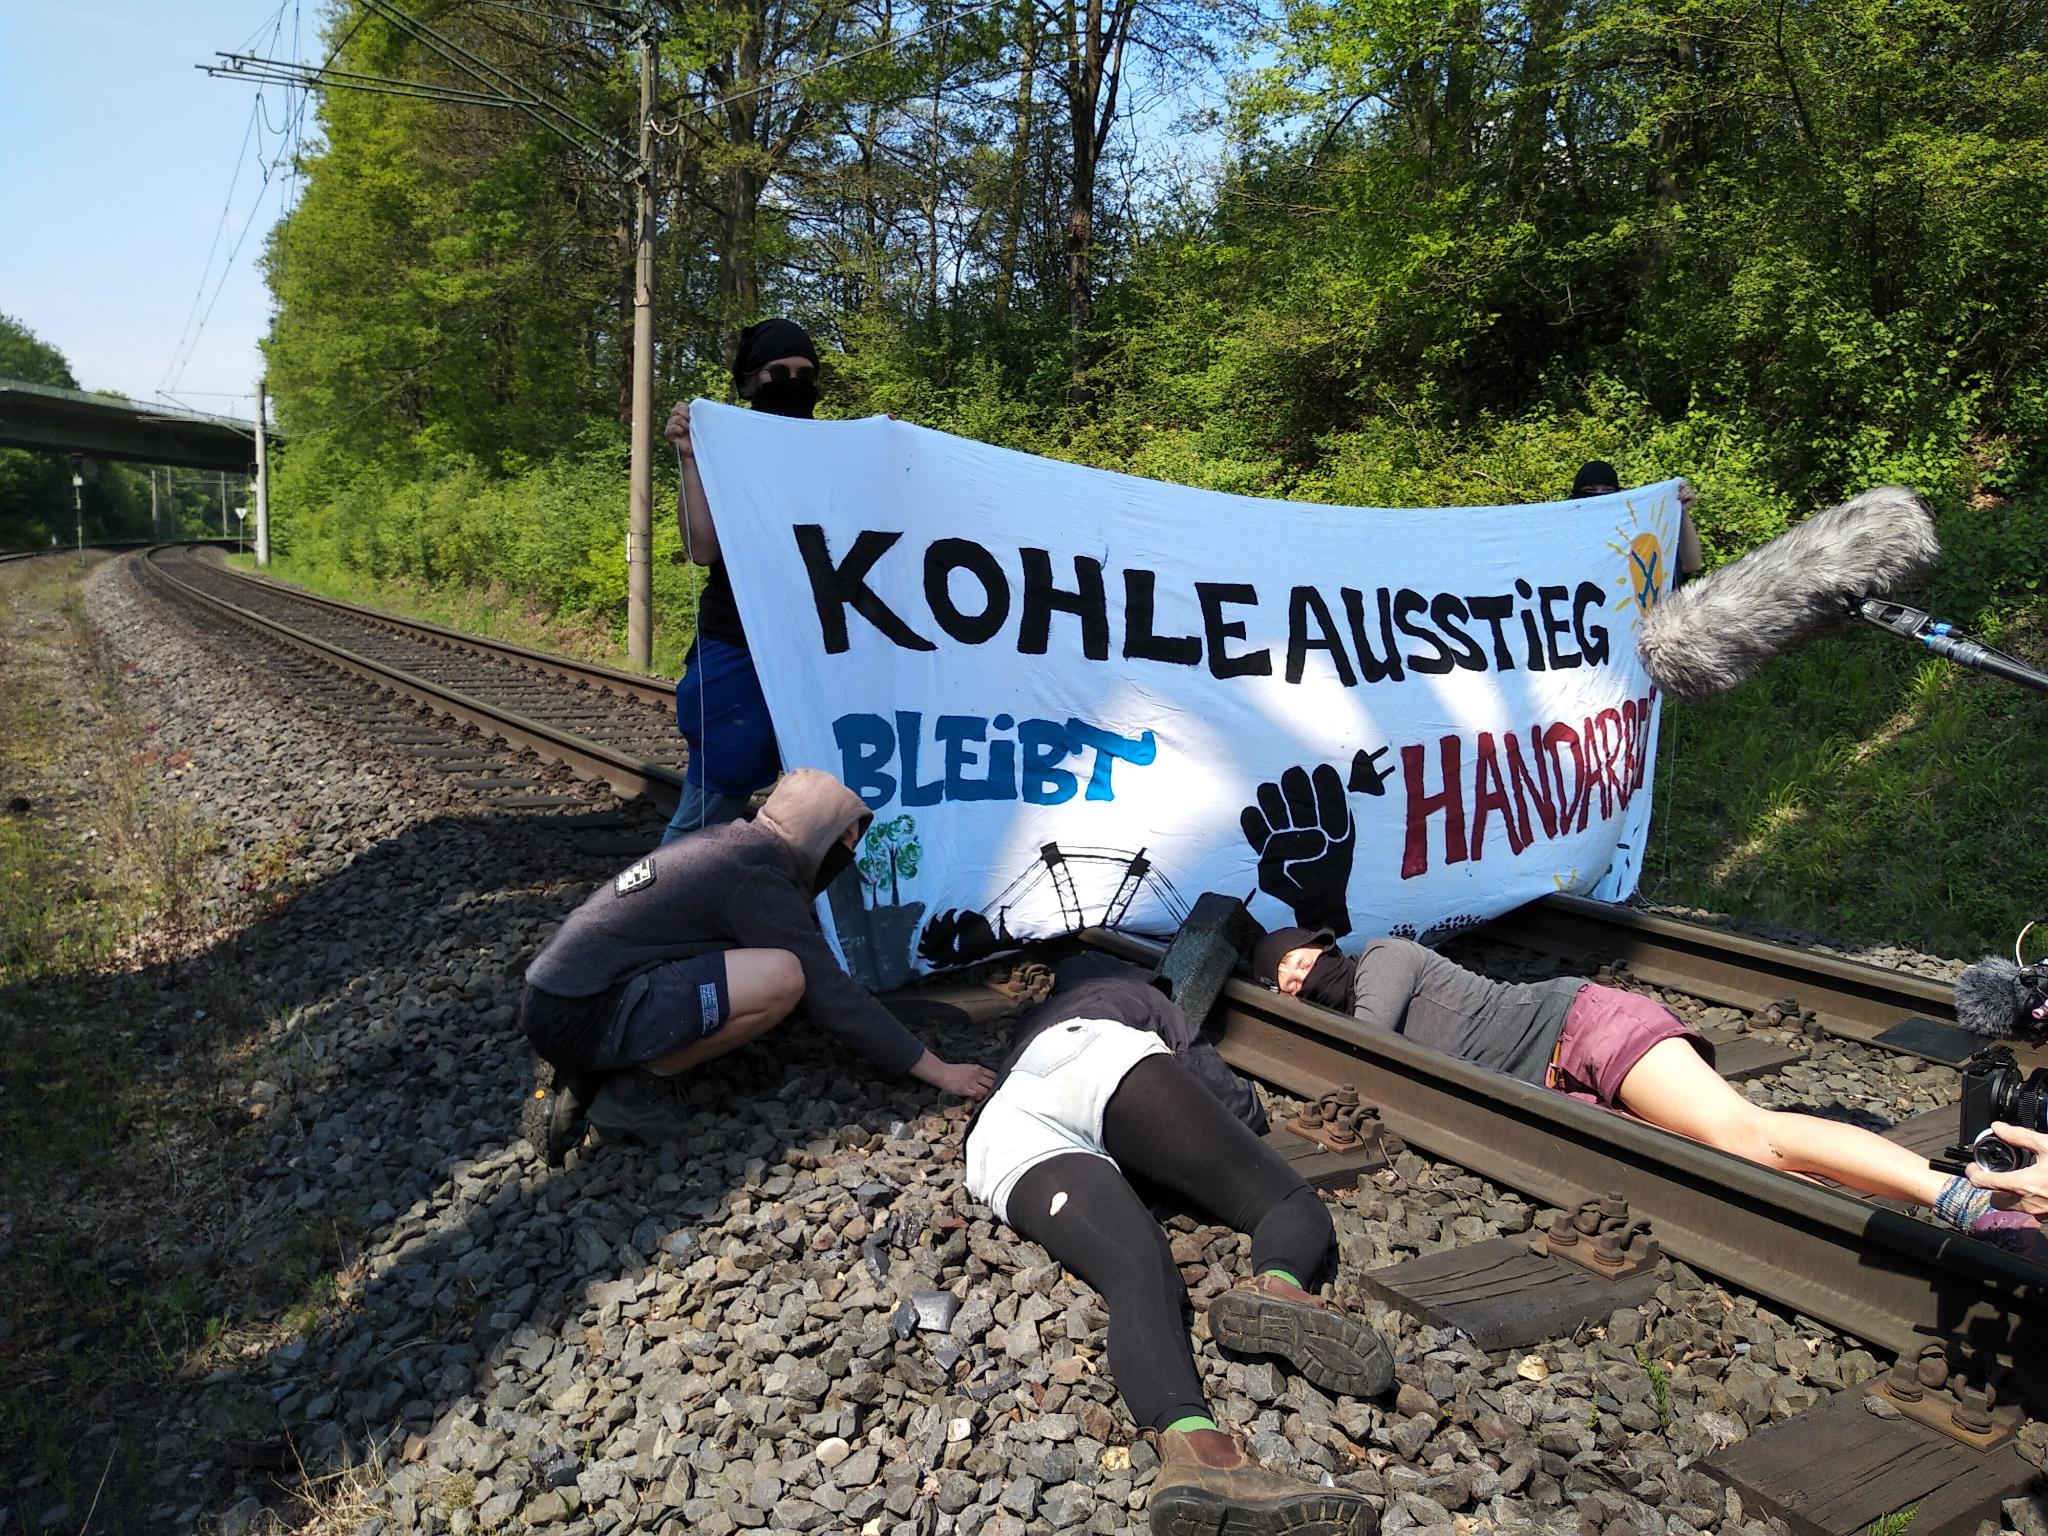 Menschen auf Gleisen mit Transparent "Kohleausstieg bleibt Handarbeit" - Lock-On verkehrt herum auf dem Gleis